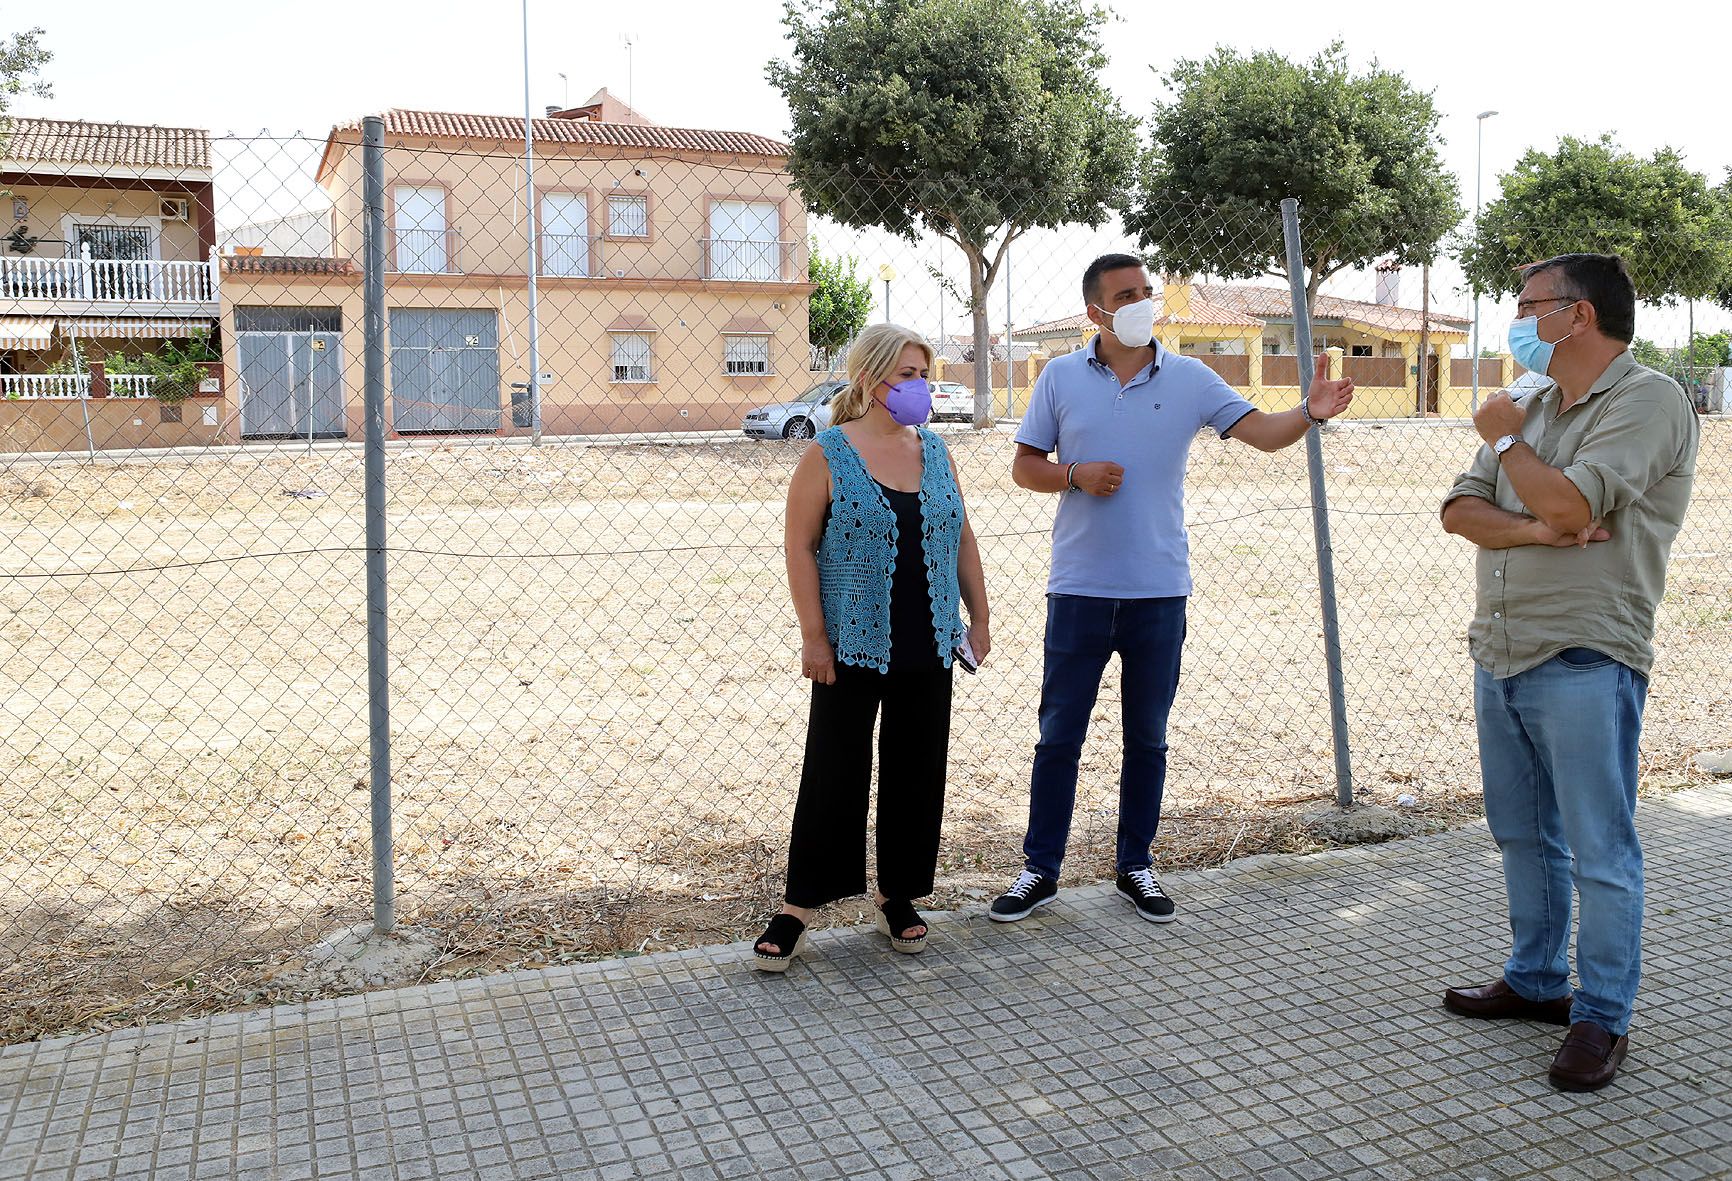 Más de 420.000 euros en obras para la Milagrosa y la Canaleja en Jerez. Solares municipales baldíos serán zonas verdes y bolsas de aparcamiento en La Canaleja.